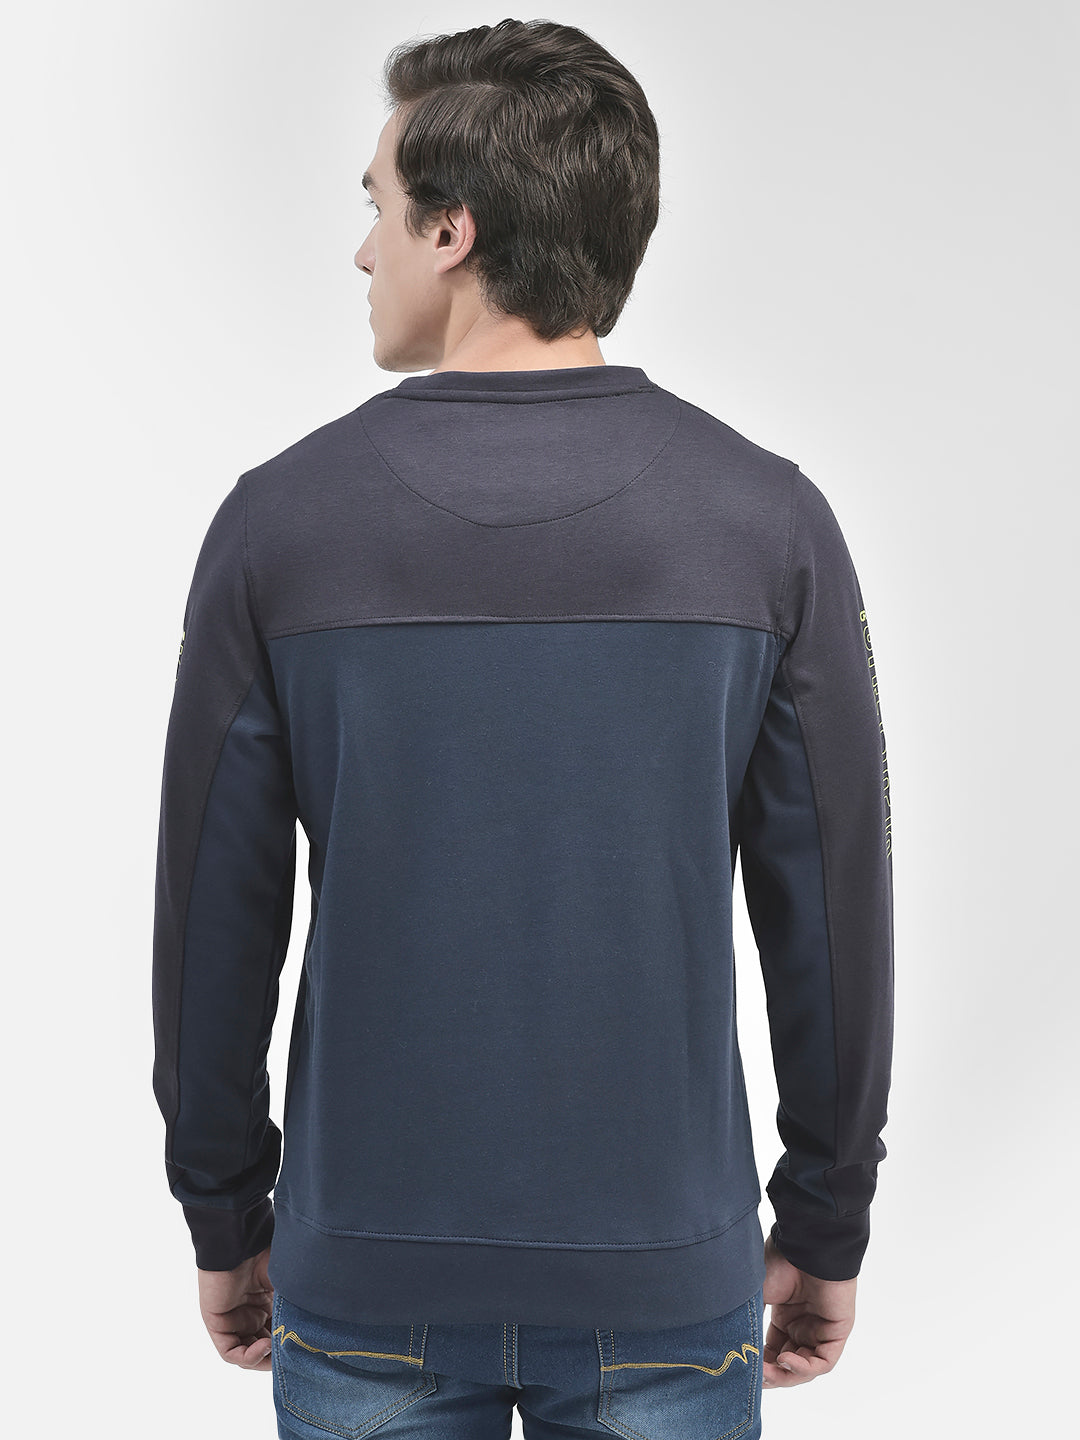 Navy Blue Round Neck Sweatshirt-Men Sweatshirts-Crimsoune Club